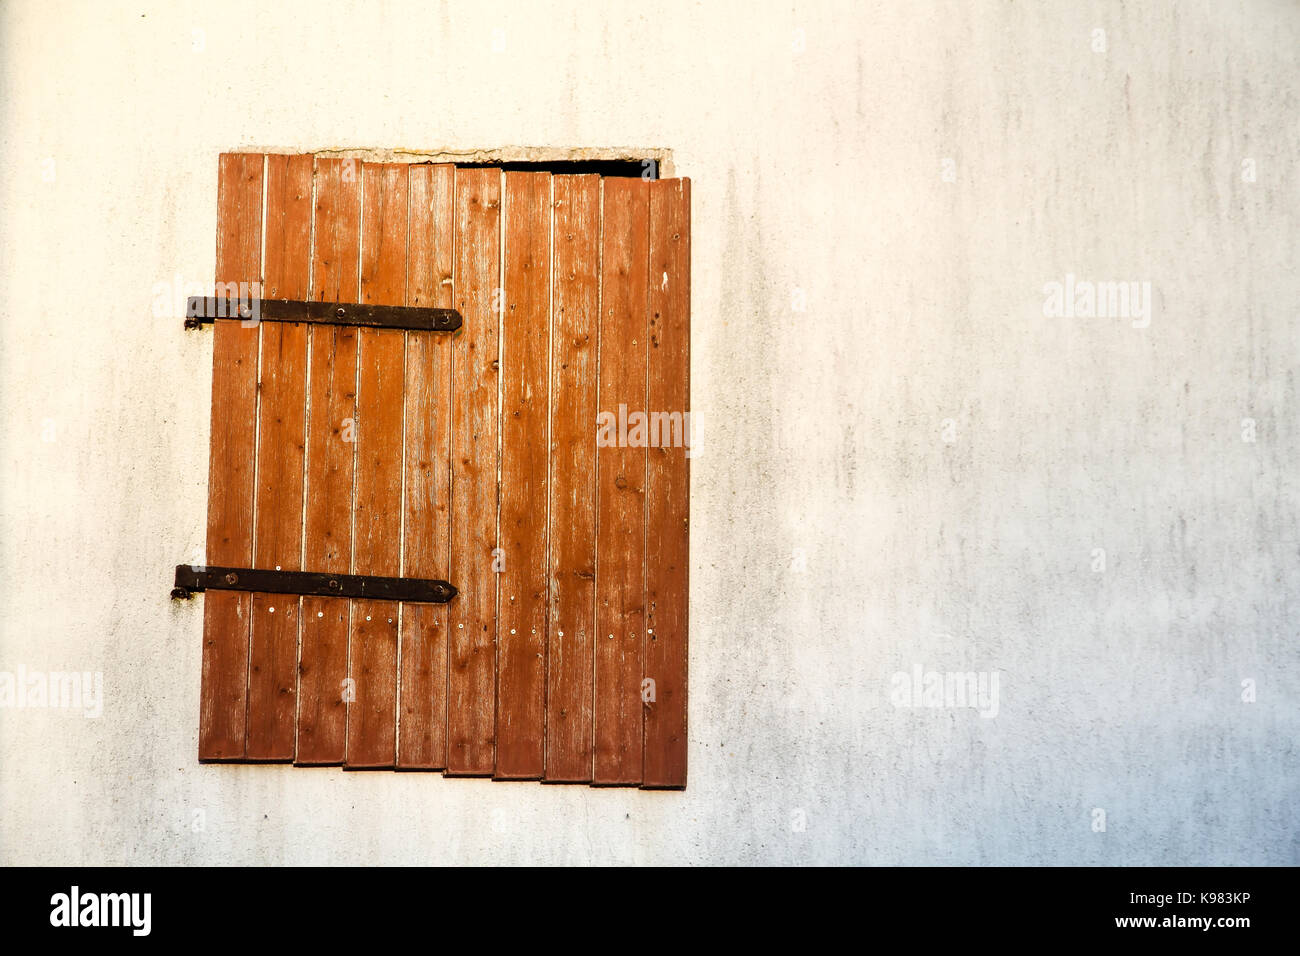 Ventanas de madera de color marrón rojizo con bisagras de metal oxidado en  una pared de cemento blanco detalle. la vieja ventana está colgando la  inclinación y sólo parcialmente el cierre de